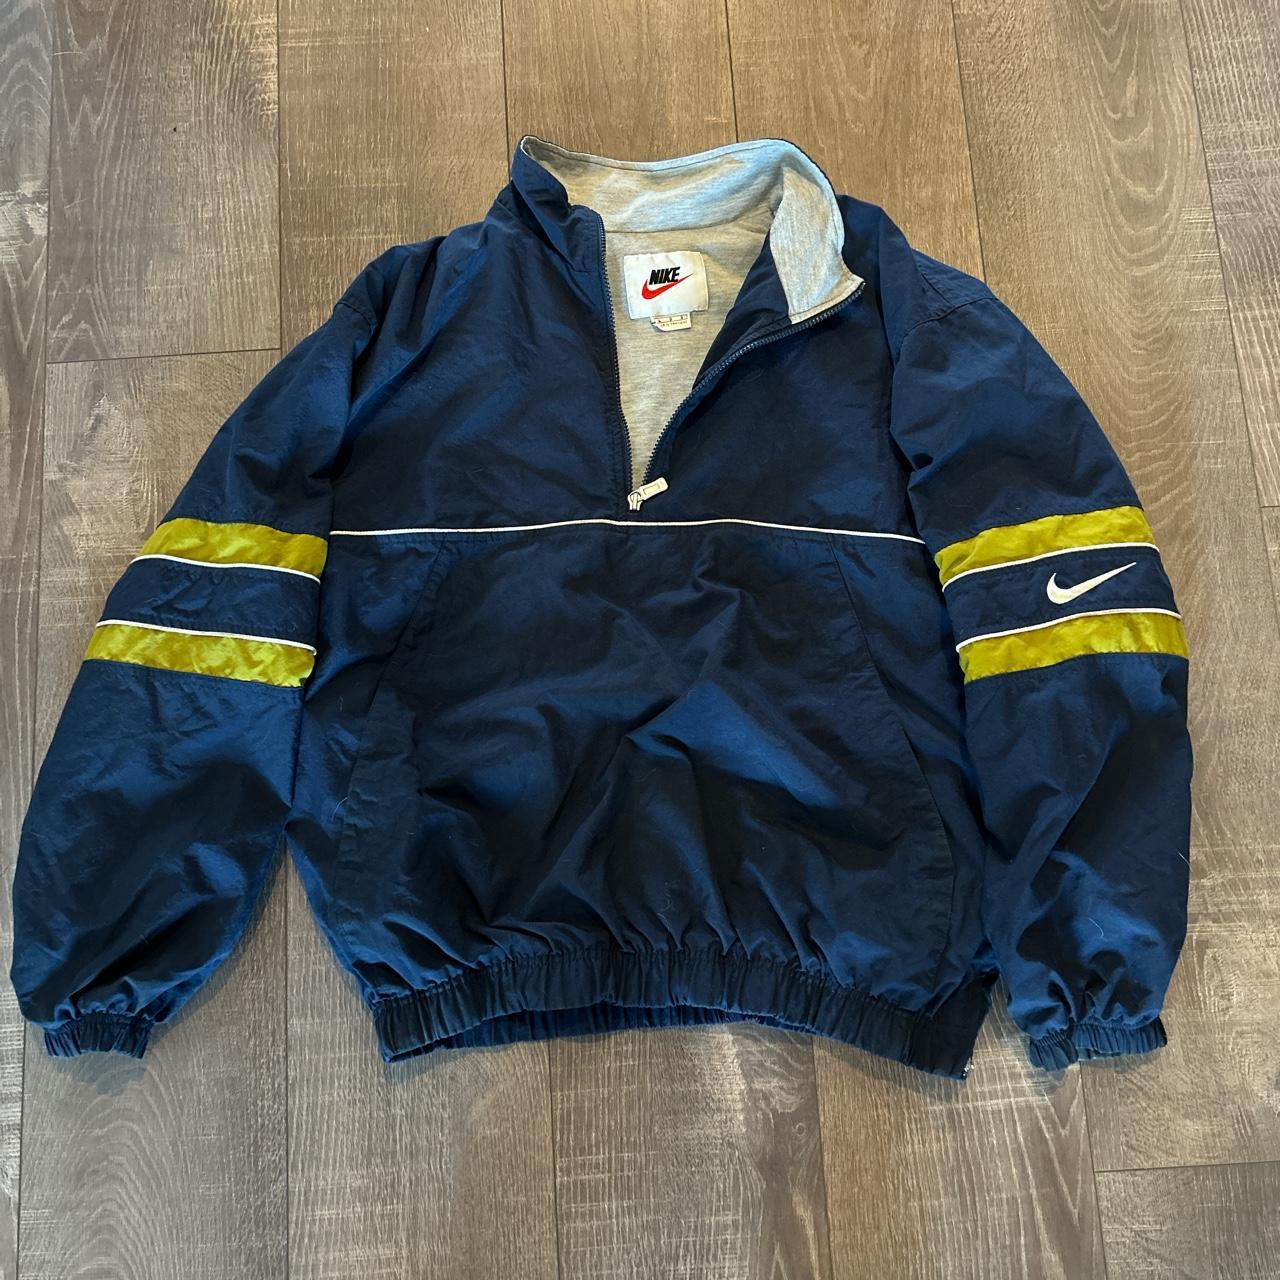 Vintage 90’s 3/4 zip up lined Nike jacket. Super... - Depop